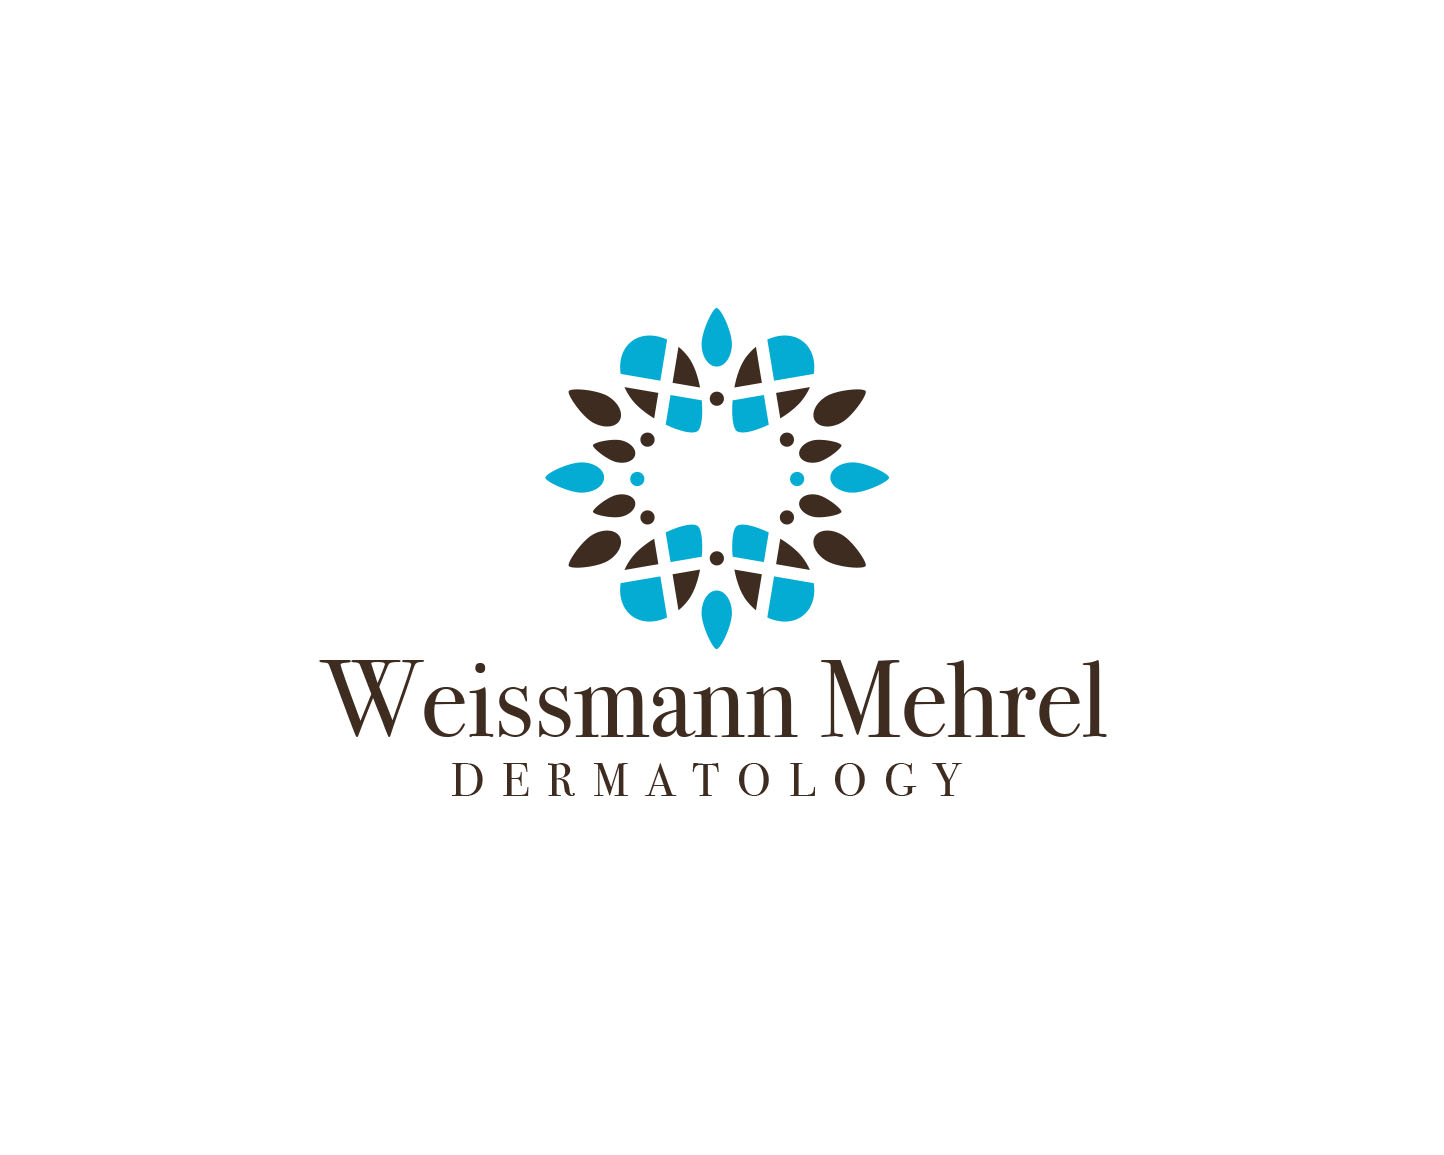 Logo Design entry 1544610 submitted by zoki169 to the Logo Design for Weissmann Mehrel Dermatology run by ArthurWeissmann